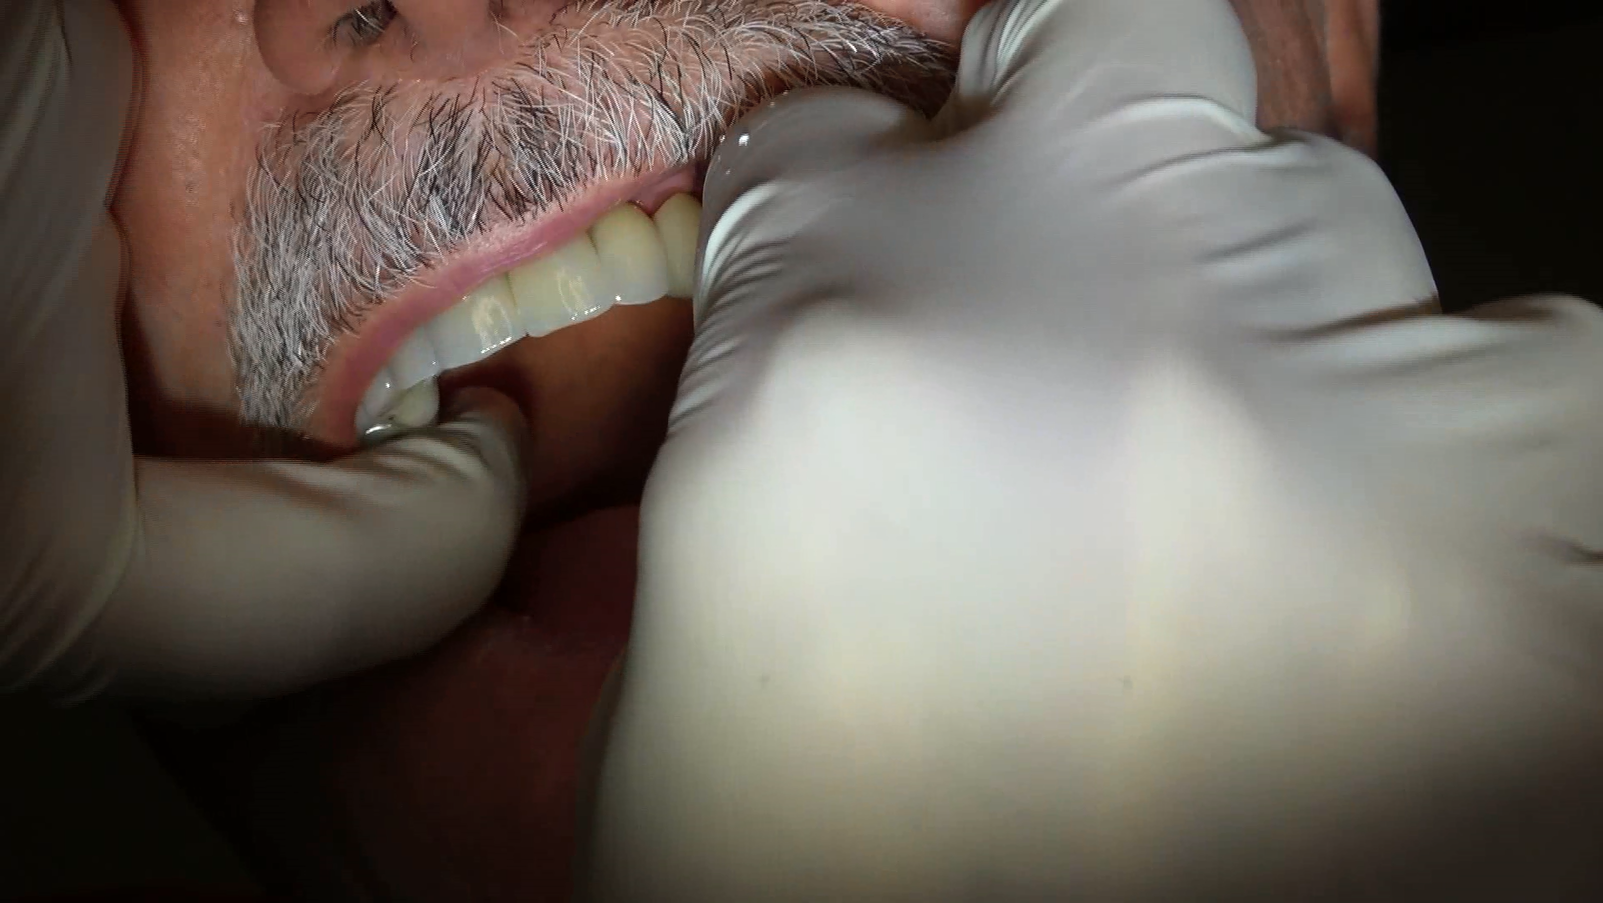 Impianti dentali senza osso evita innesti e rialzi con protesi circolare senza gengiva con Galileus Cerclage Sinus®